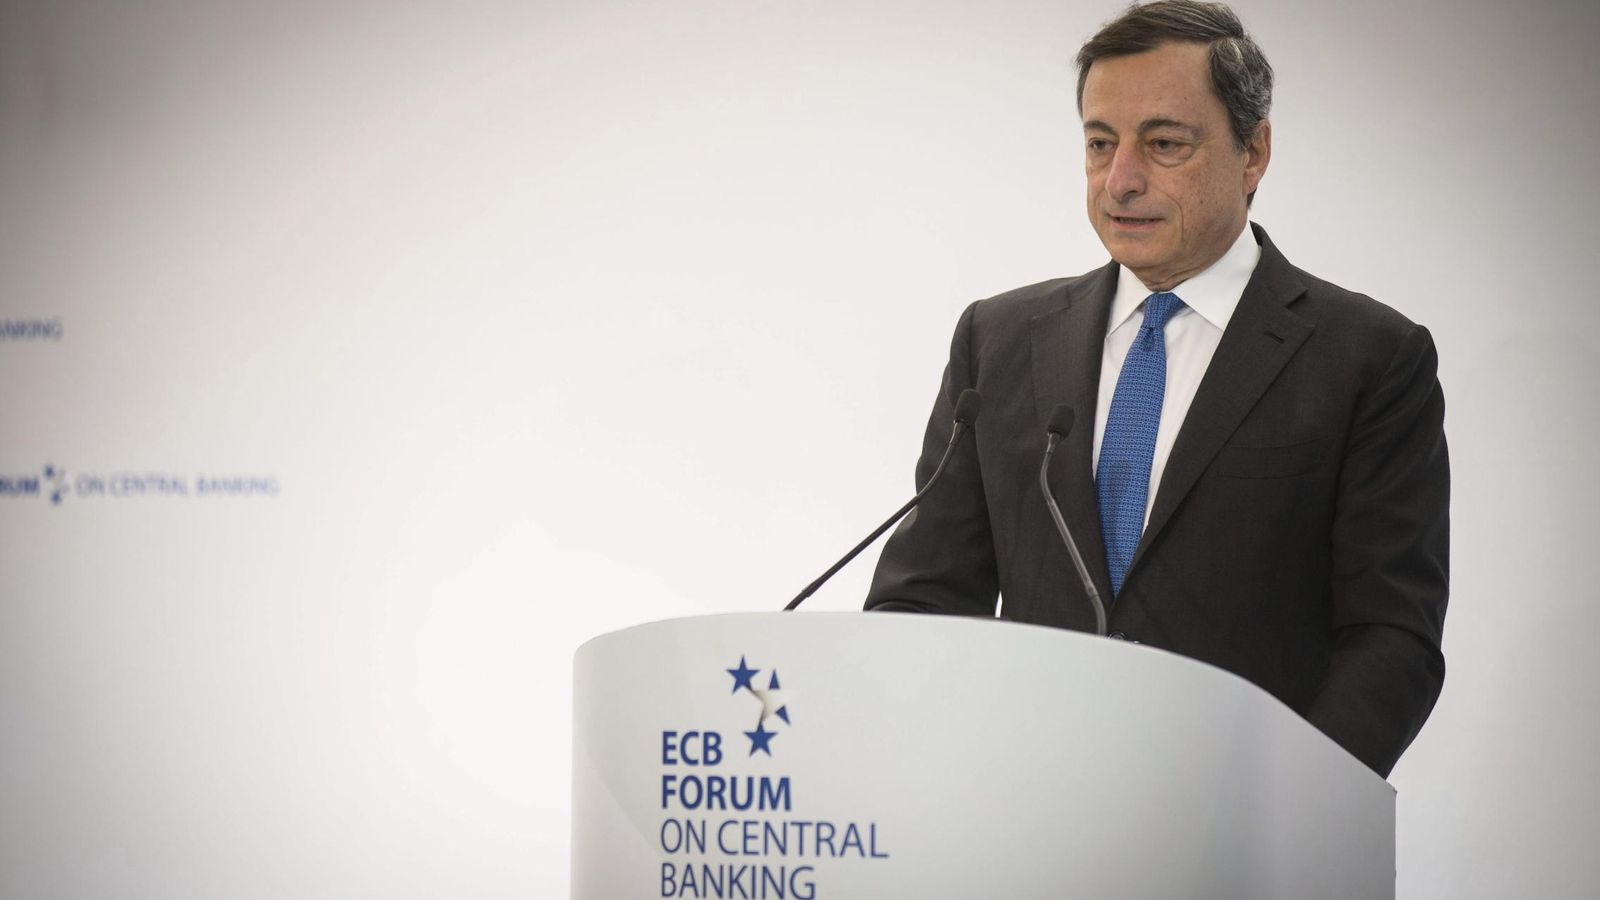 Foto: El presidente del BCE, Mario Draghi, durante su intervención en Sintra